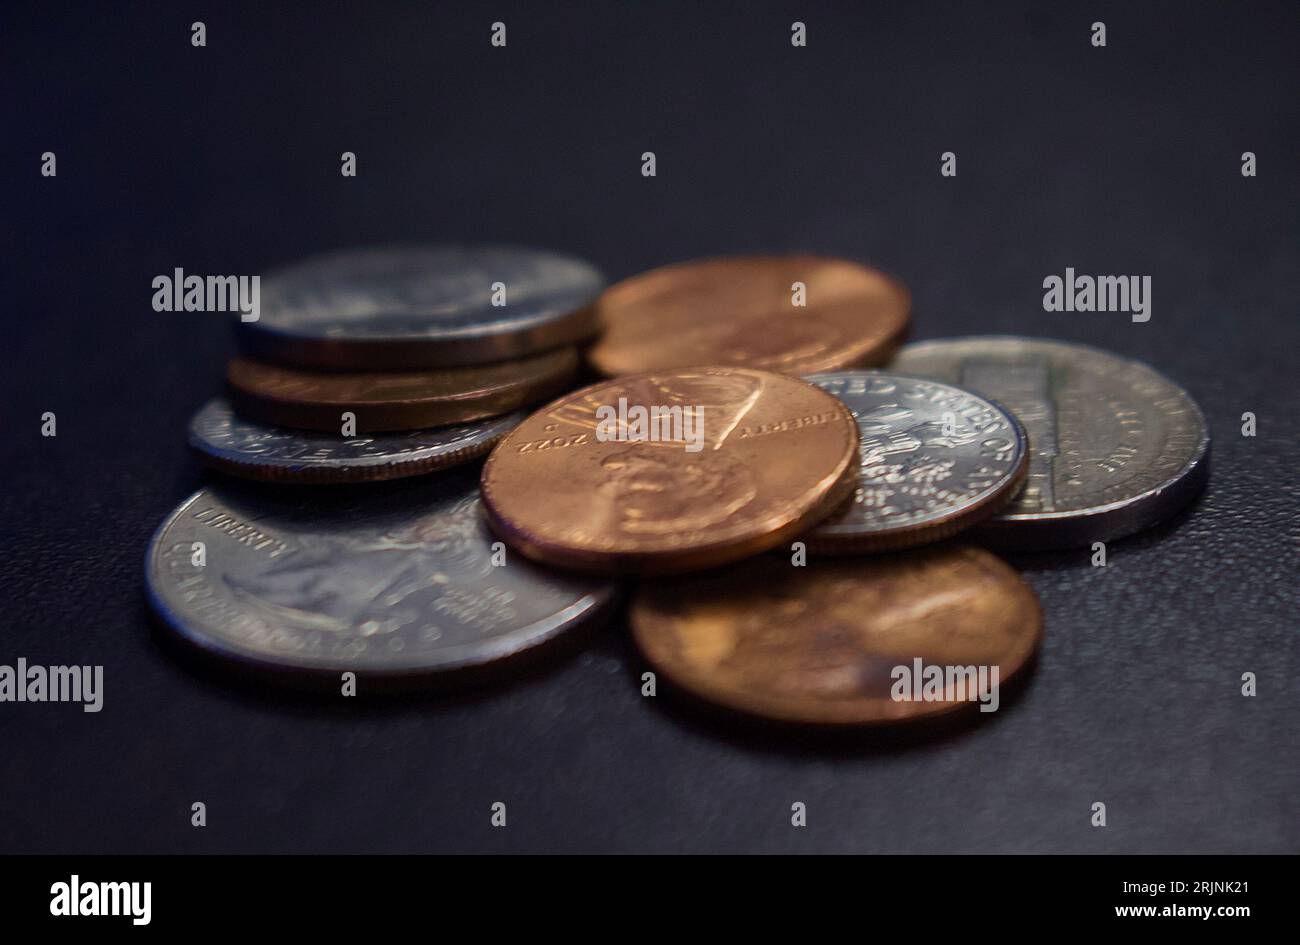 Ein Stapel verschiedener Münzen unterschiedlicher Größe auf einer flachen grauen Oberfläche Stockfoto